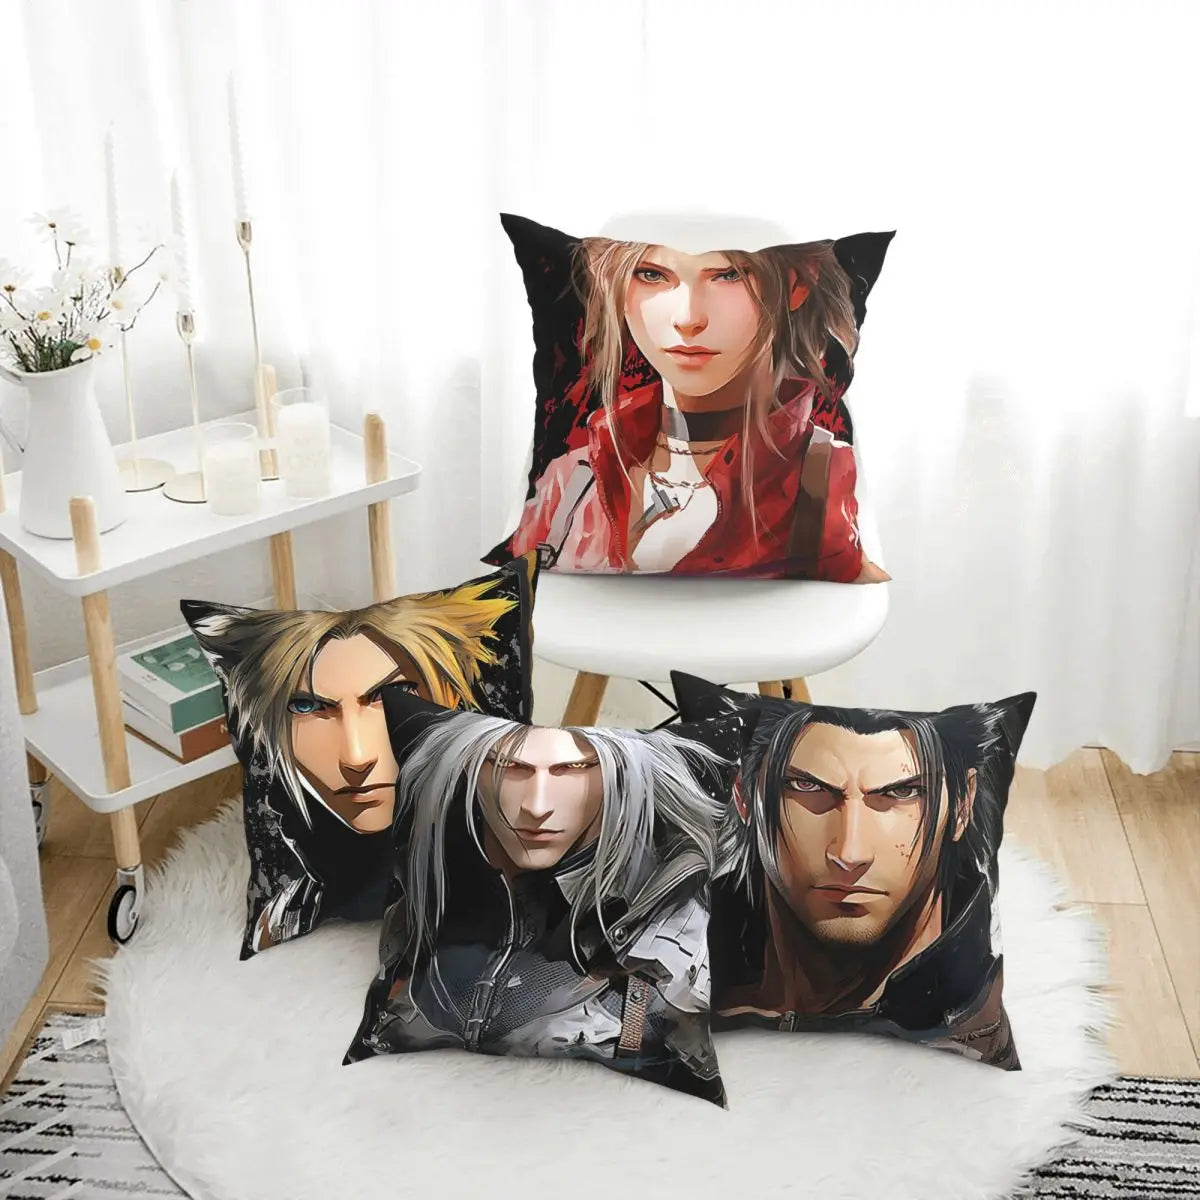 Final Fantasy VII Rebirth Aerith Fanart juego de rol anime funda de cojín decoración funda de almohada para asiento impresión de doble cara